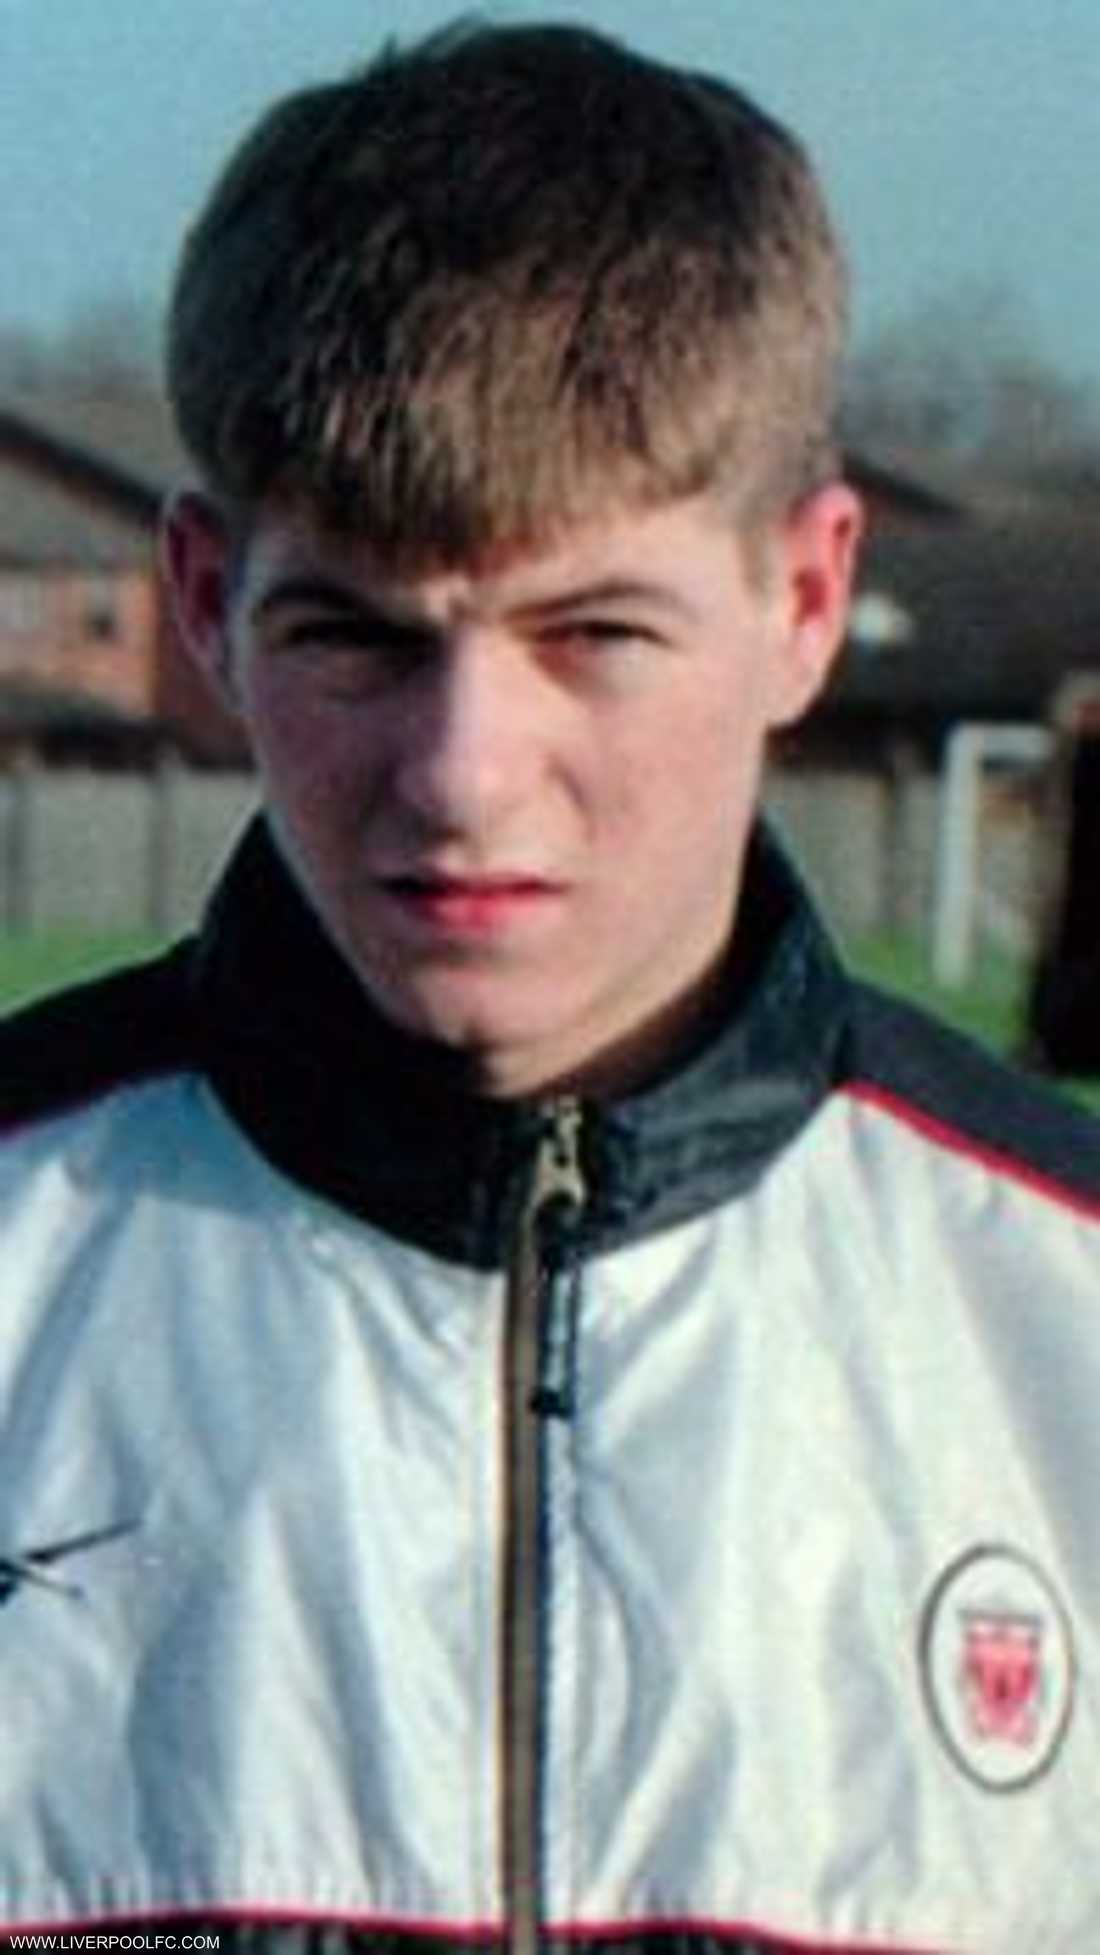 جيرارد سجل ظهوره الأول مع ليفربول في 29 نوفمبر 1998 في مباراة بالدوري الممتاز أمام بلاكبيرن بعدما انضم له بعمر الثامنة